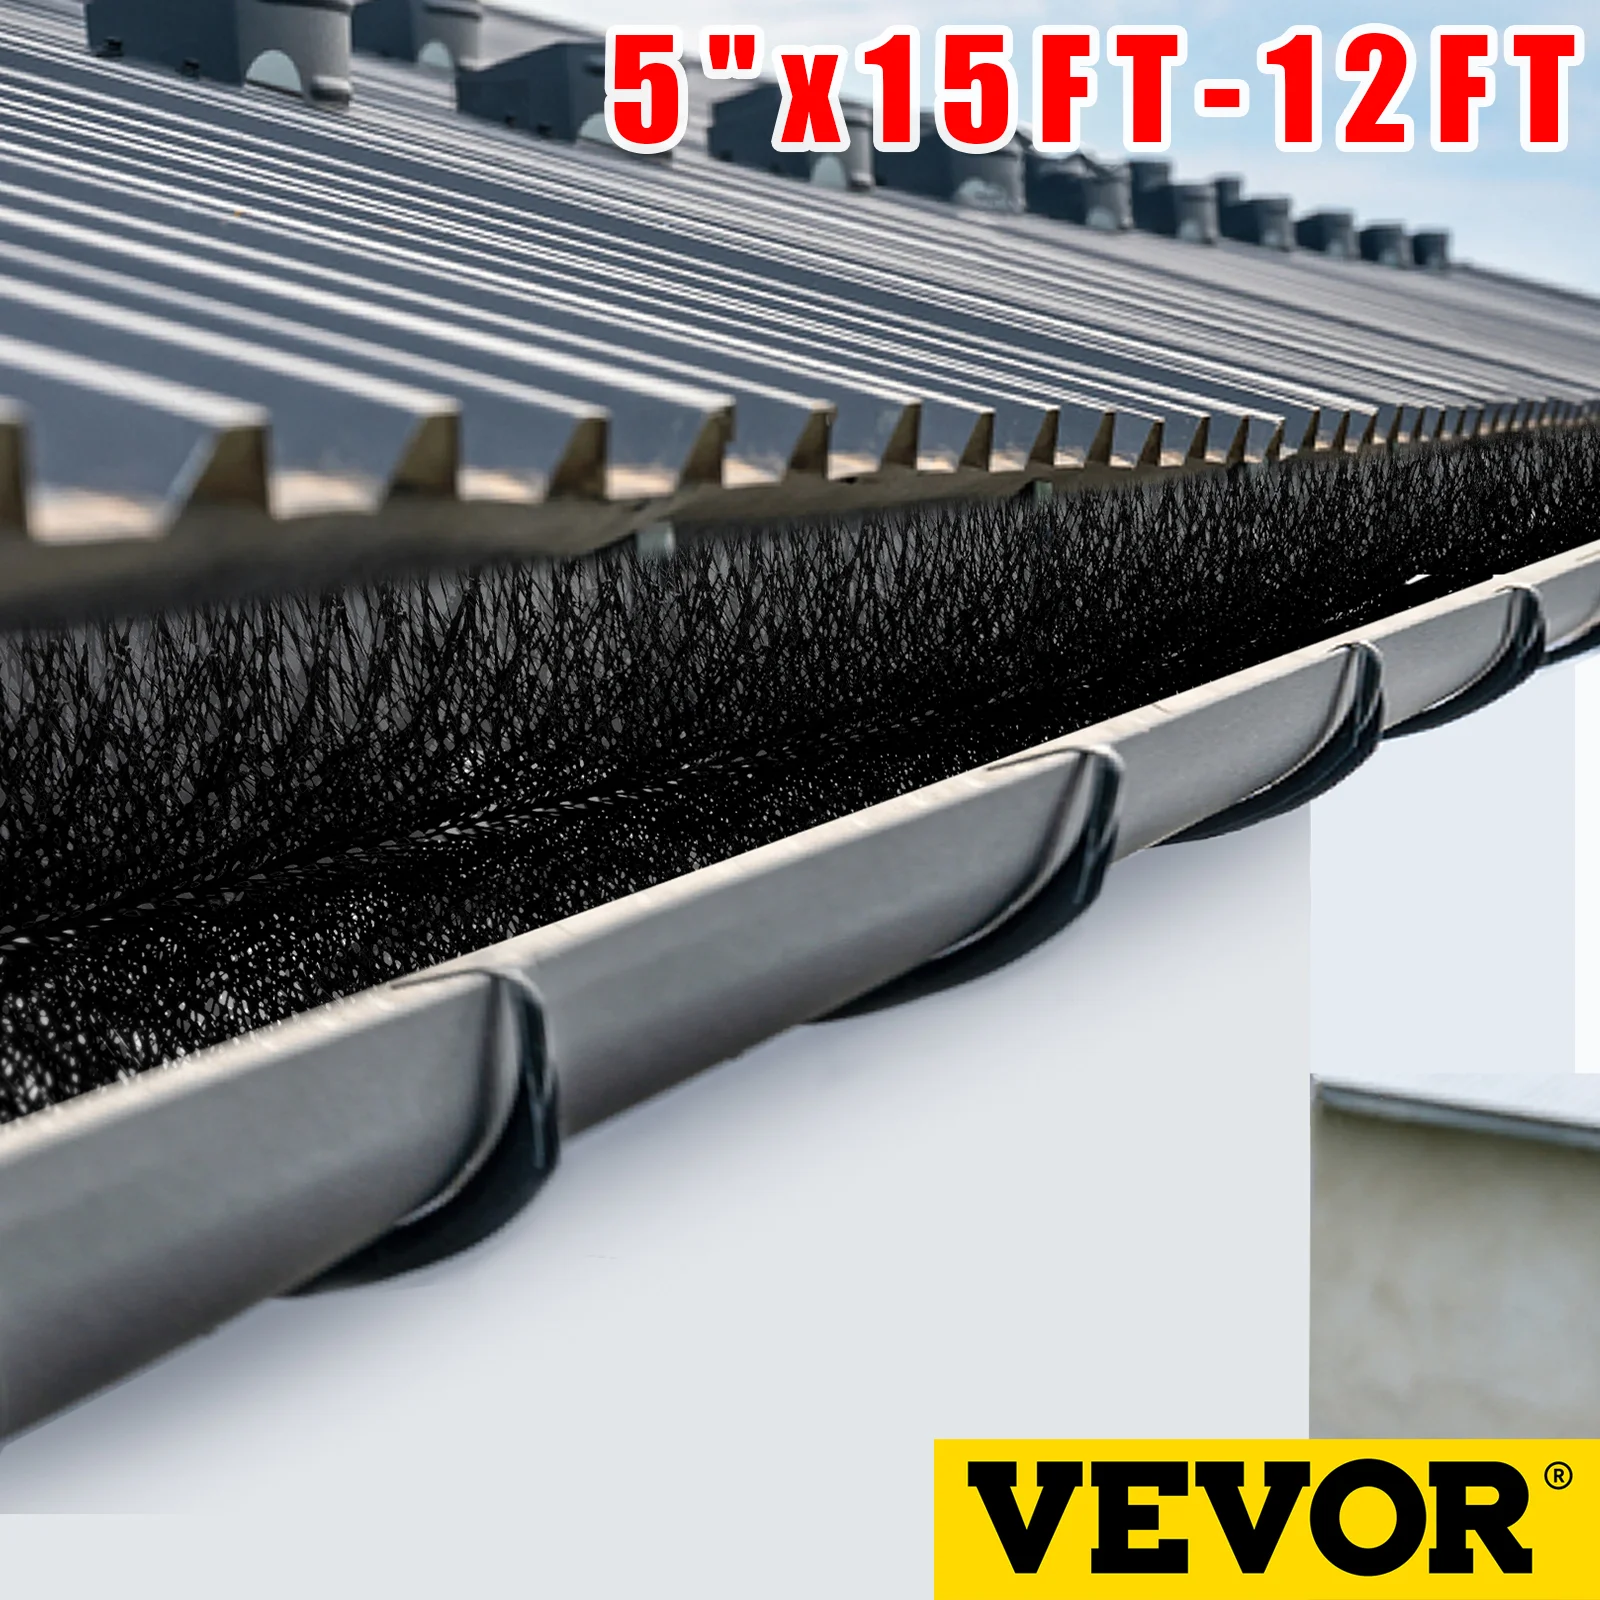 

VEVOR Gutter Guard Cylinder-Shaped Brush Easy On Gutter Guard 5" Gutter Brush W/ Bristle Easy To Clean For Roof Gutter Outdoor